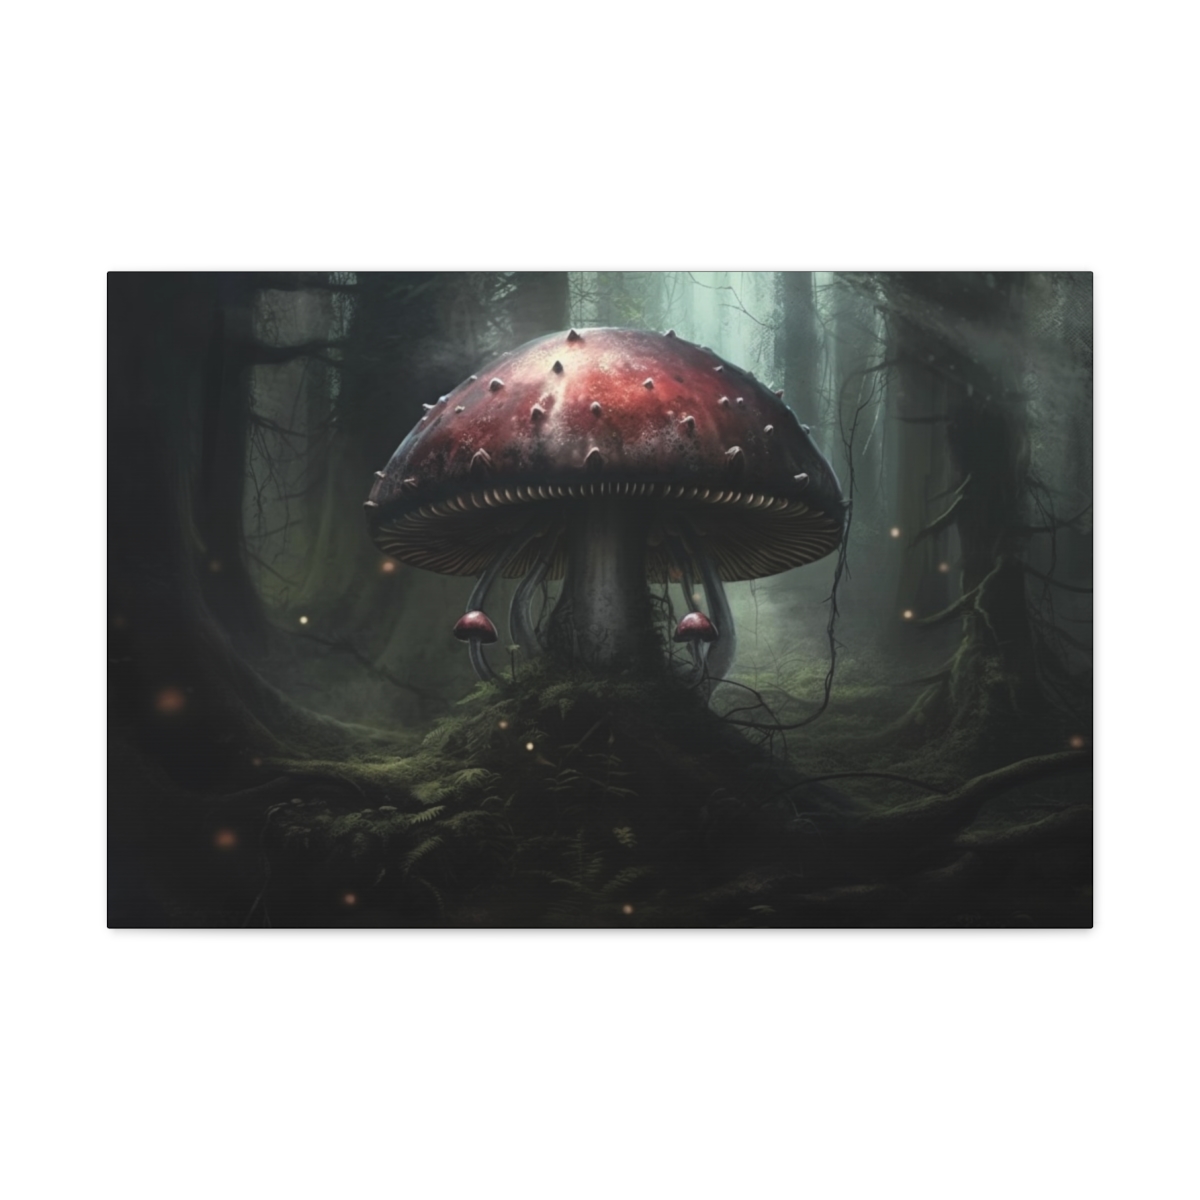 Mushroom Art Canvas Print: Fungi of Knowledge